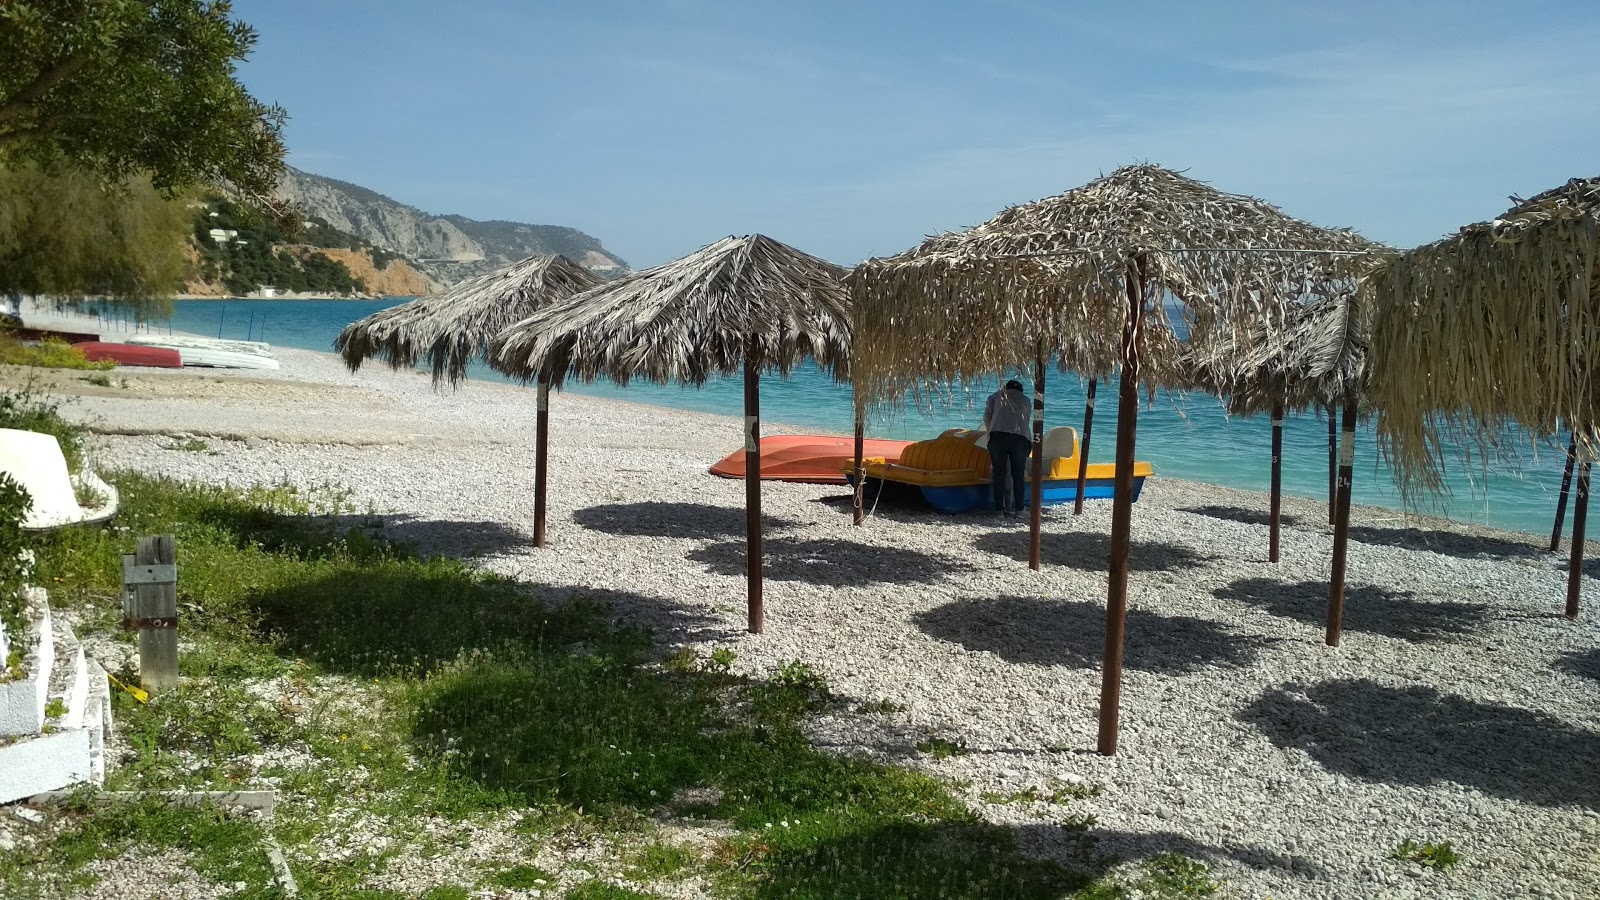 Photo de Kinetas 2 beach - endroit populaire parmi les connaisseurs de la détente